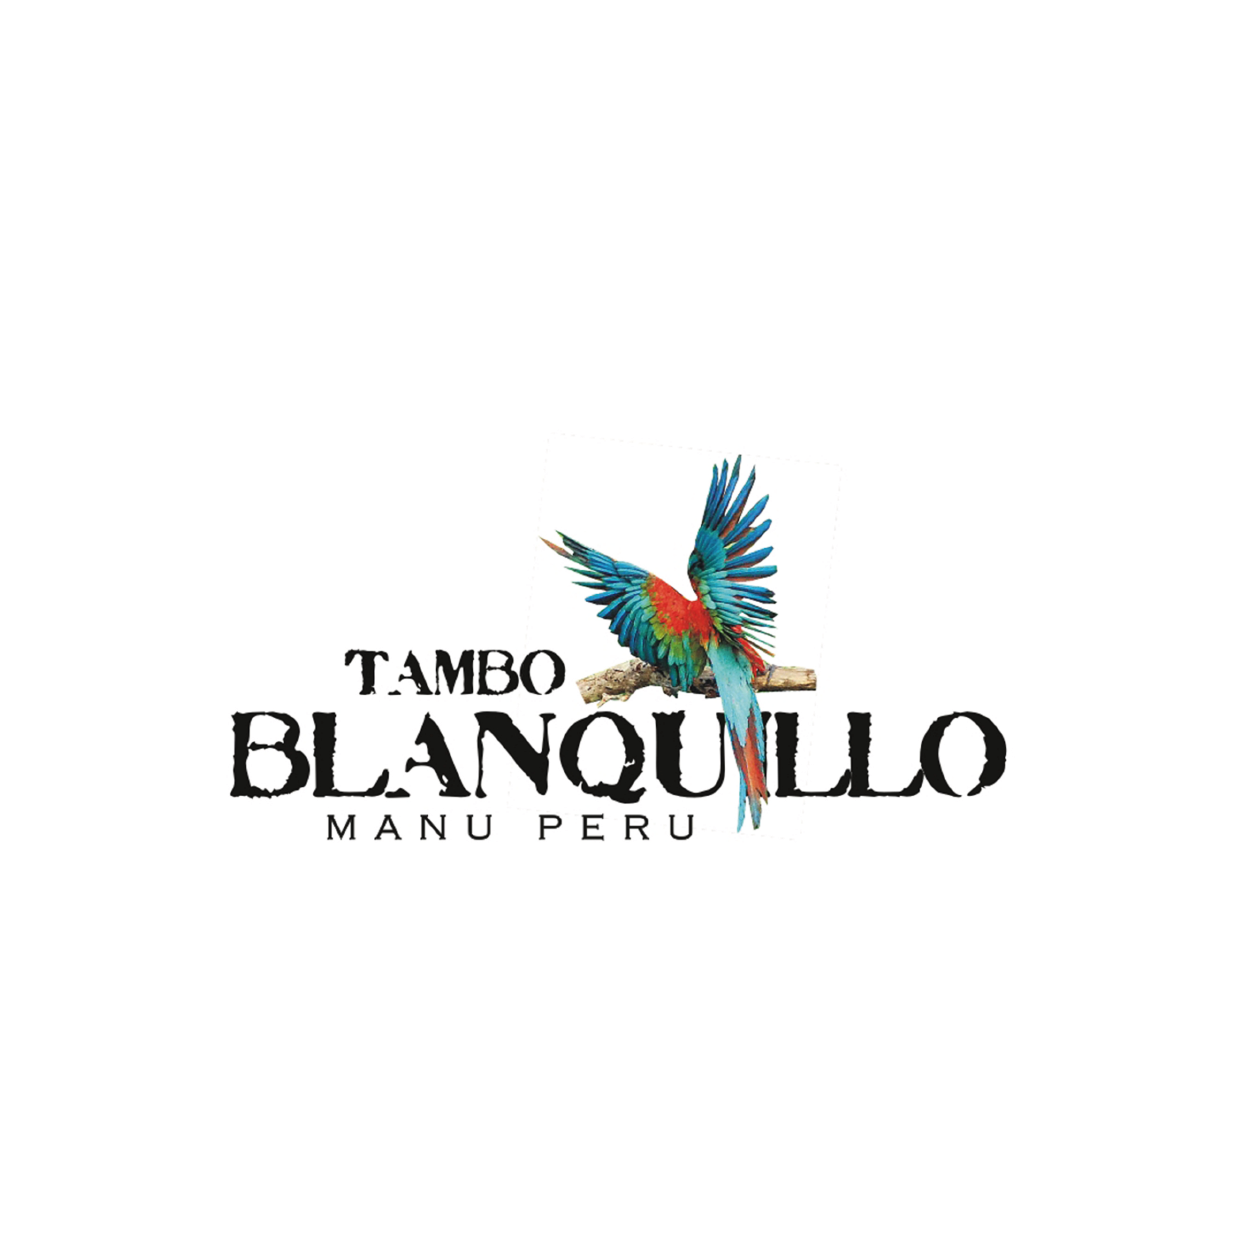 Tambo Blanquillo